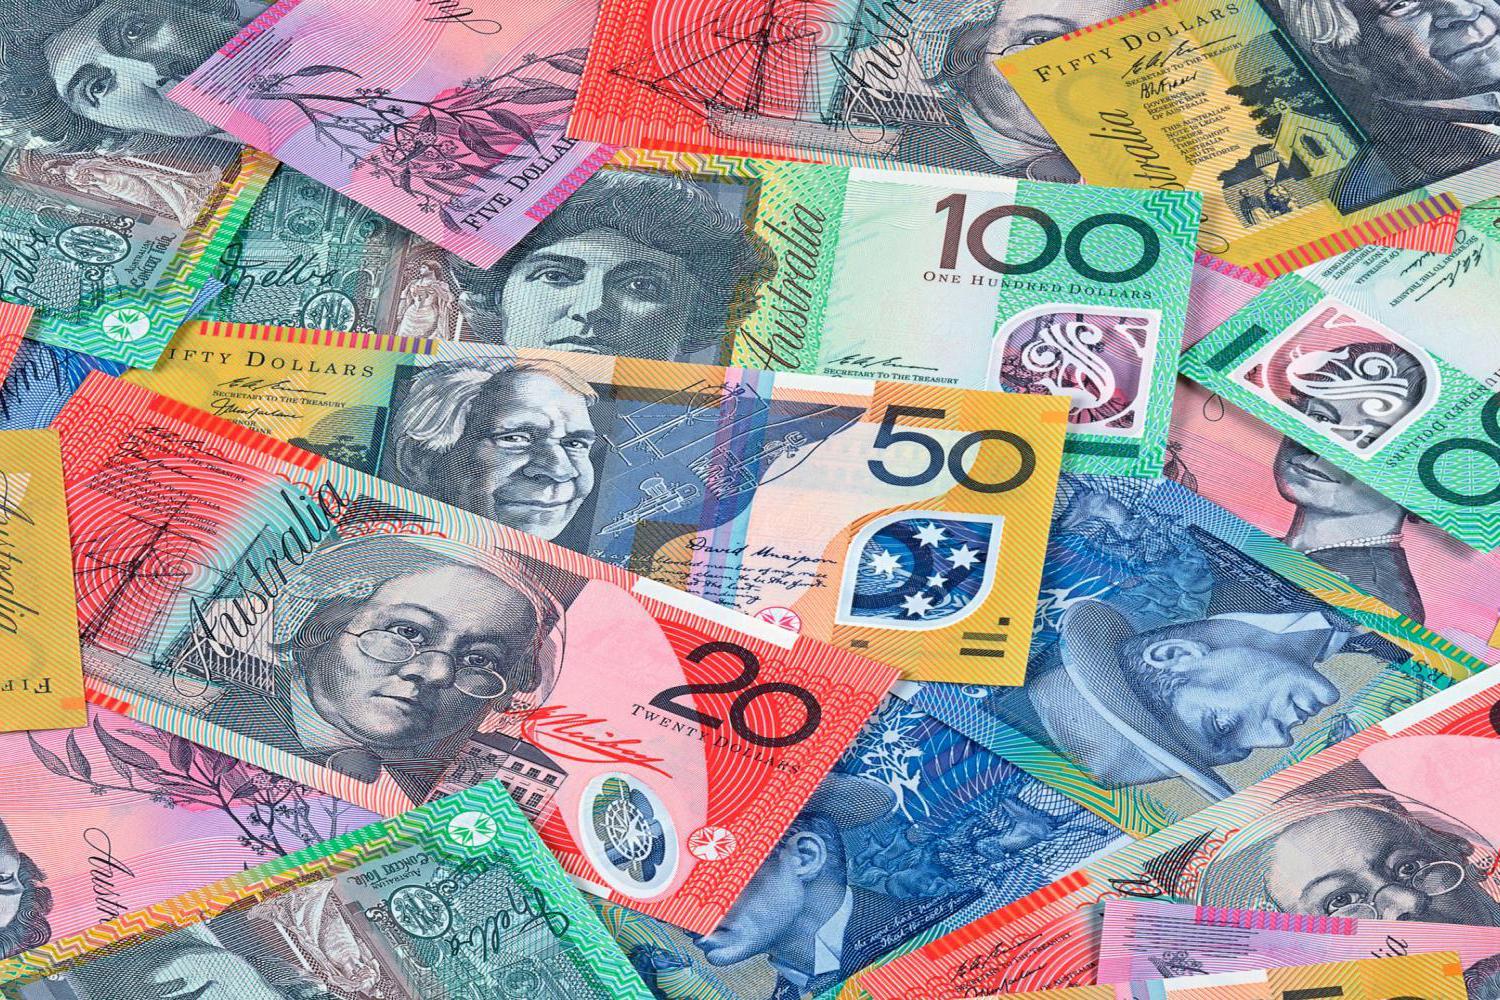 澳大利亚货币 免版税库存图片 - 图片: 8746289